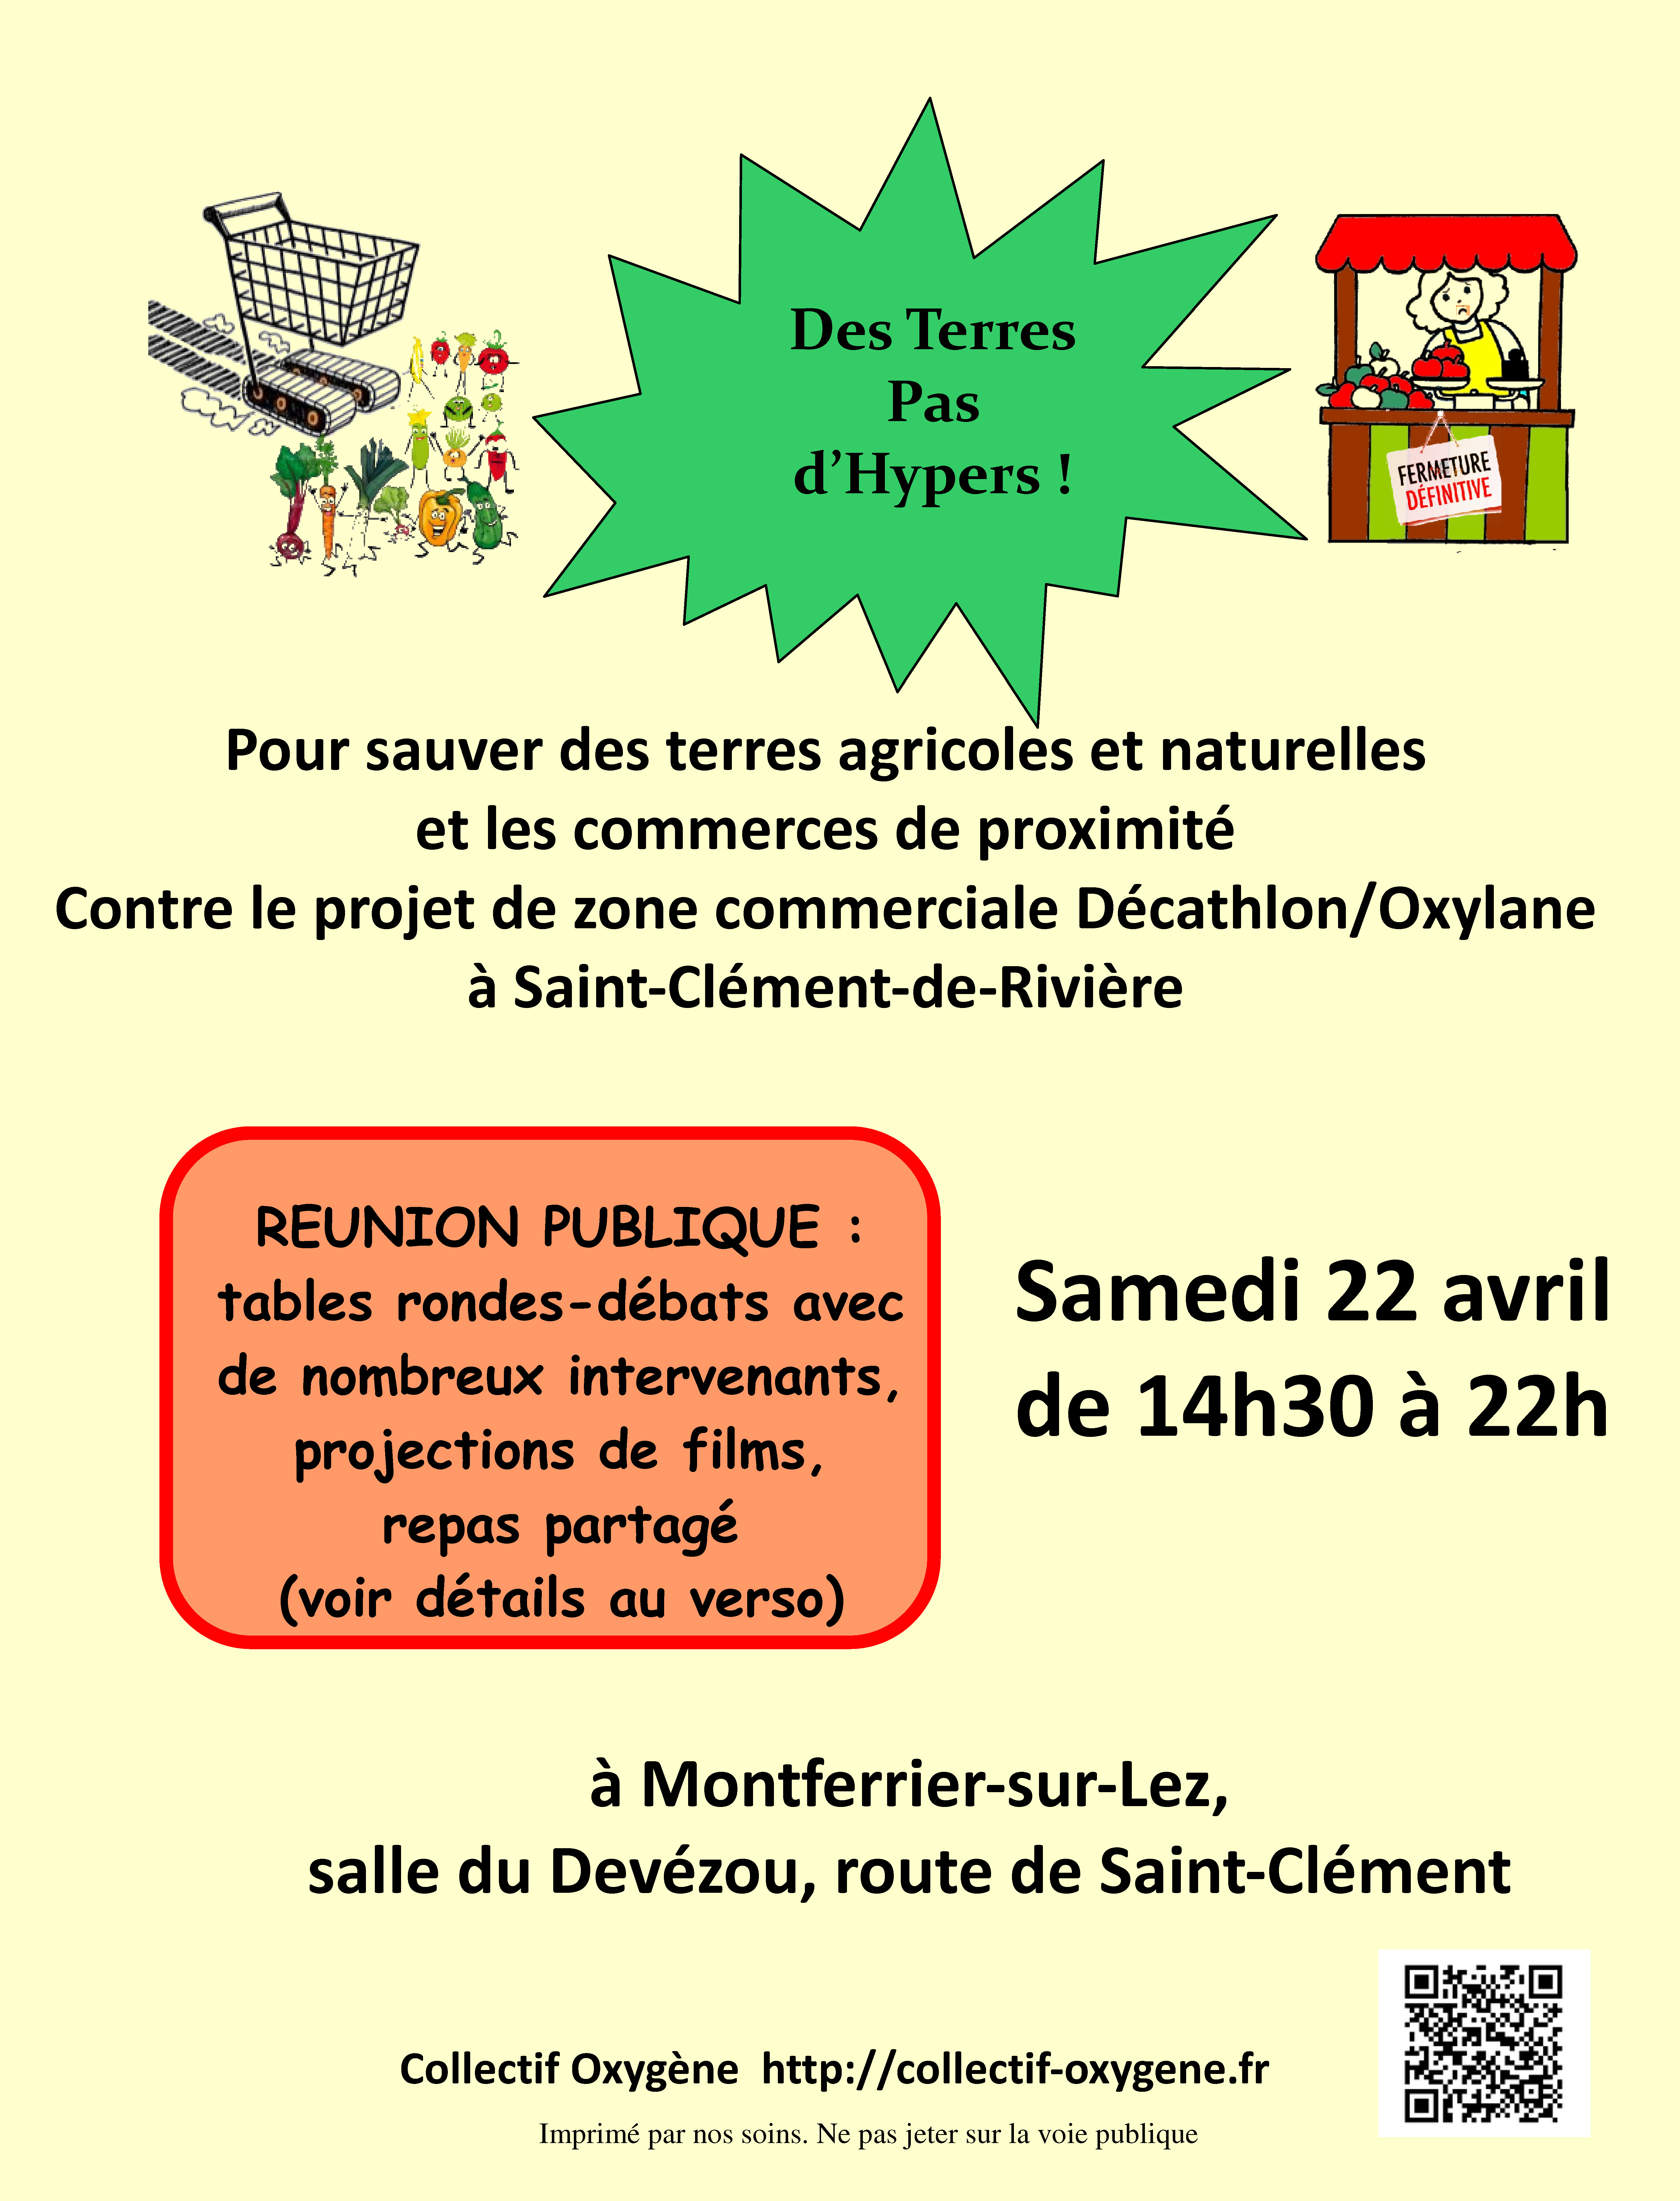 Le collectif Oxygene vous invite à une grande journée "Des Terres, pas d'Hypers", ce samedi 22 avril de 14h30 à 22h, salle du Devézou à Montferrier sur Lez.